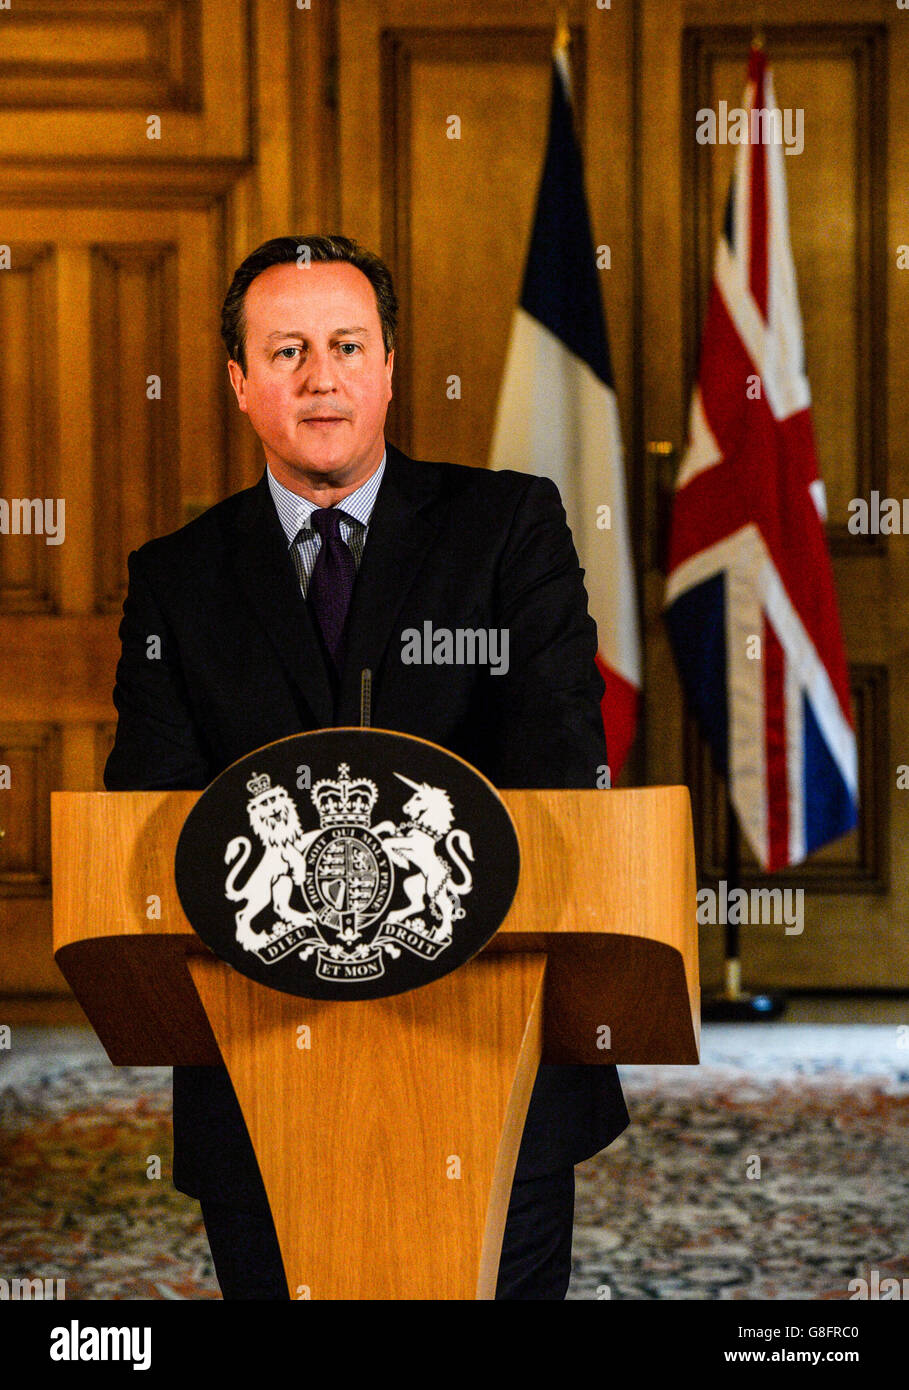 Il primo ministro David Cameron parla nella Sala da pranzo di Stato di 10 Downing Street, Londra dopo aver presiedere un incontro di emergenza di Cobra sulla scia di una serie di attentati terroristici coordinati a Parigi venerdì sera, che hanno causato almeno 127 morti e oltre 200 feriti. Foto Stock